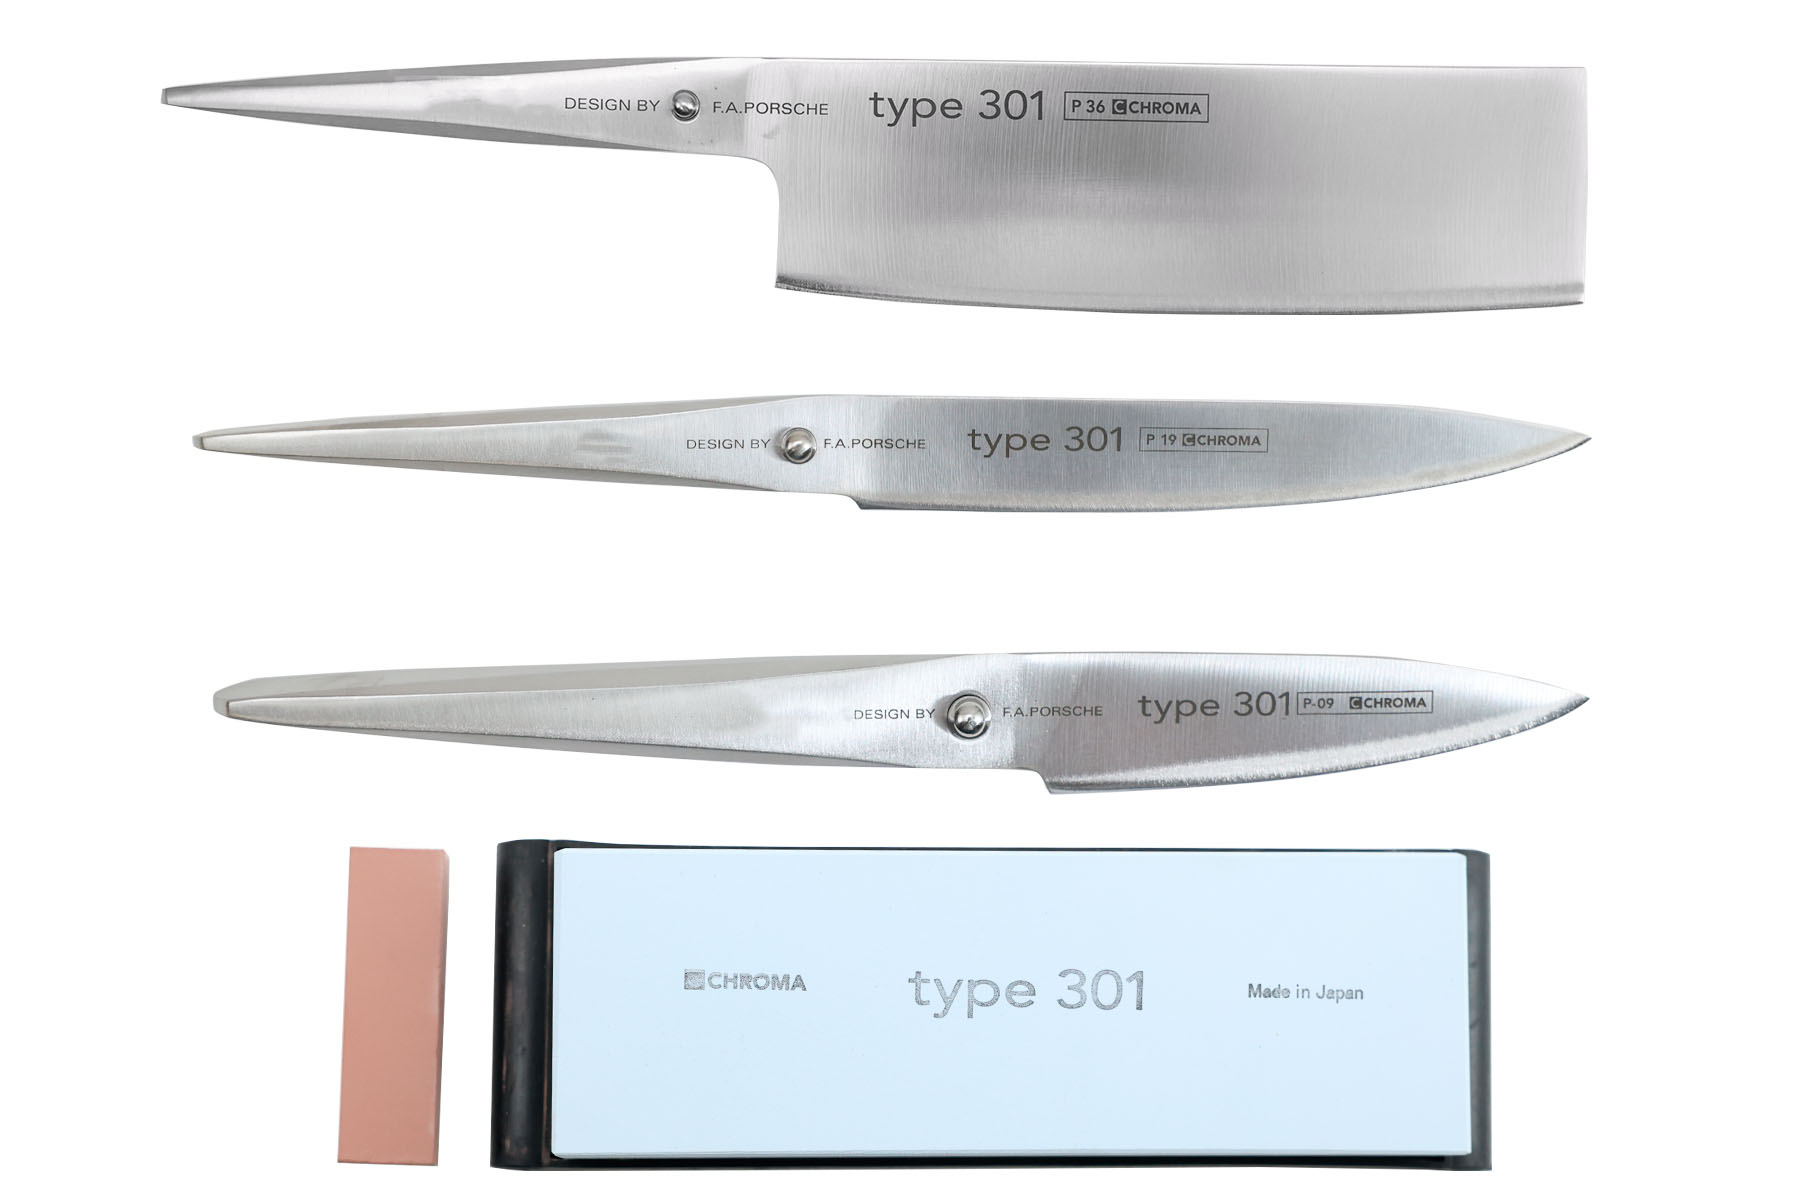 Set de 3 couteaux japonais Type 301 design by F.A. Porsche - Forme vegan + pierre à aiguiser Chroma